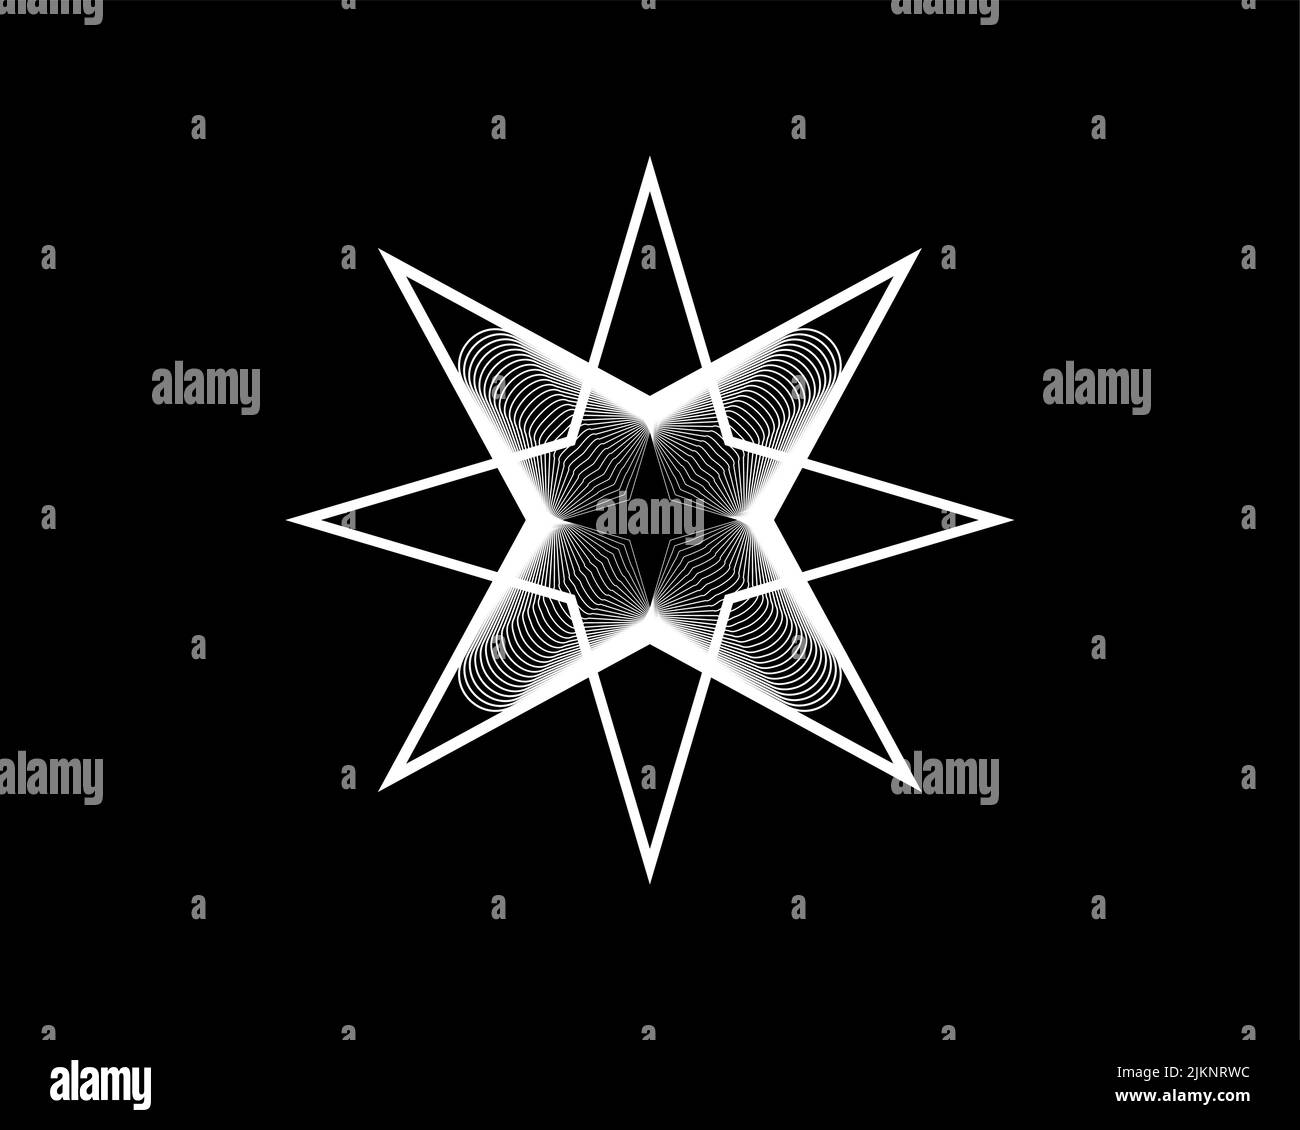 Stern mit acht Punkten, elegantes Vektor-Logo-Design, Dekorative Logo-Schablone für Schönheit, Heilige Geometrie in weißer Farbe, geometrisches Muster isoliert auf Schwarz Stock Vektor